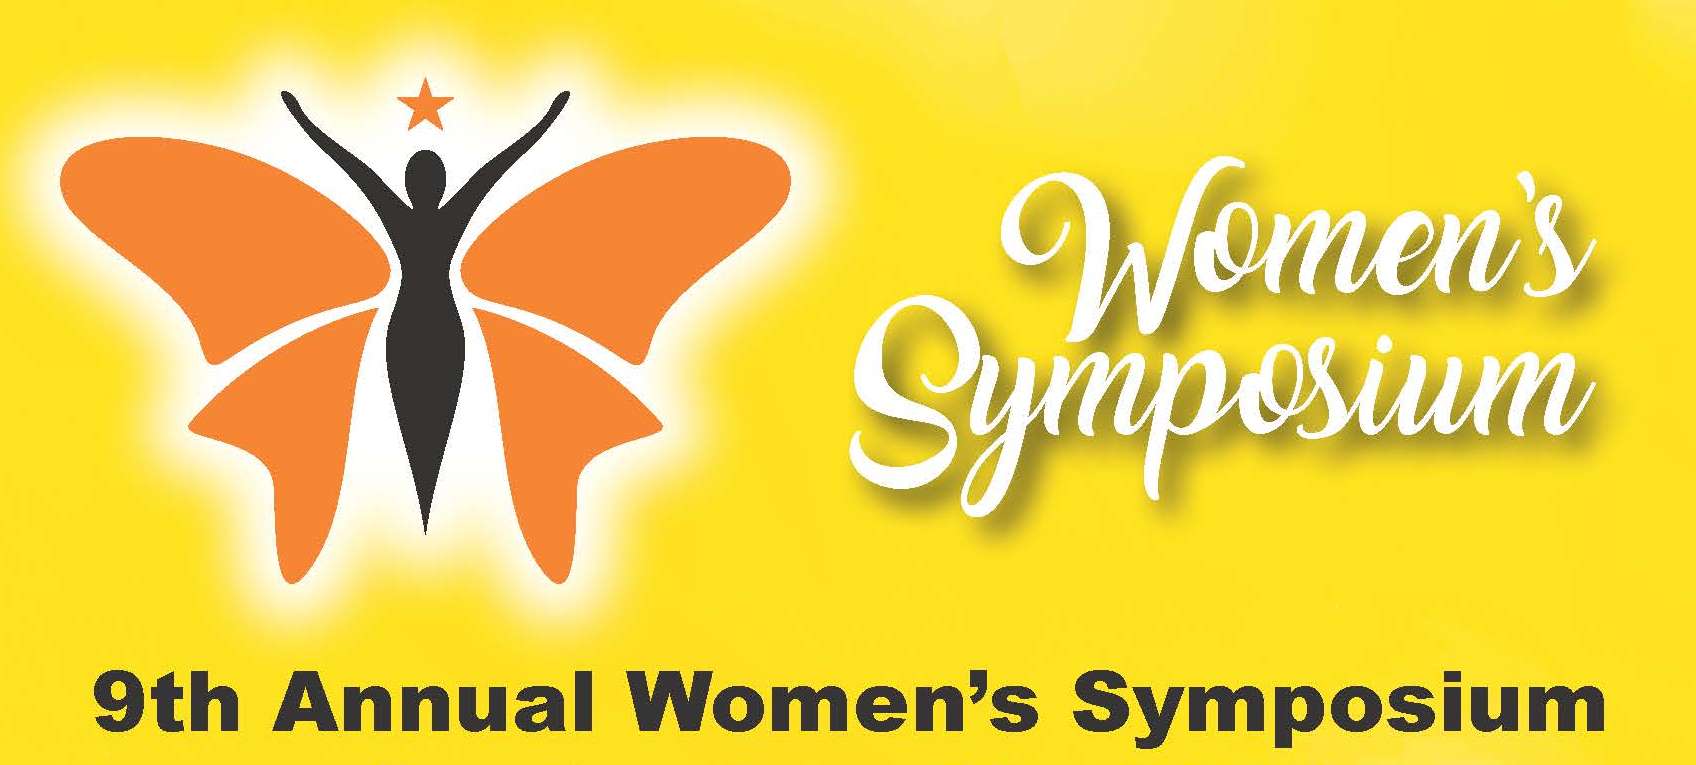 WOMEN'S SYMPOSIUM